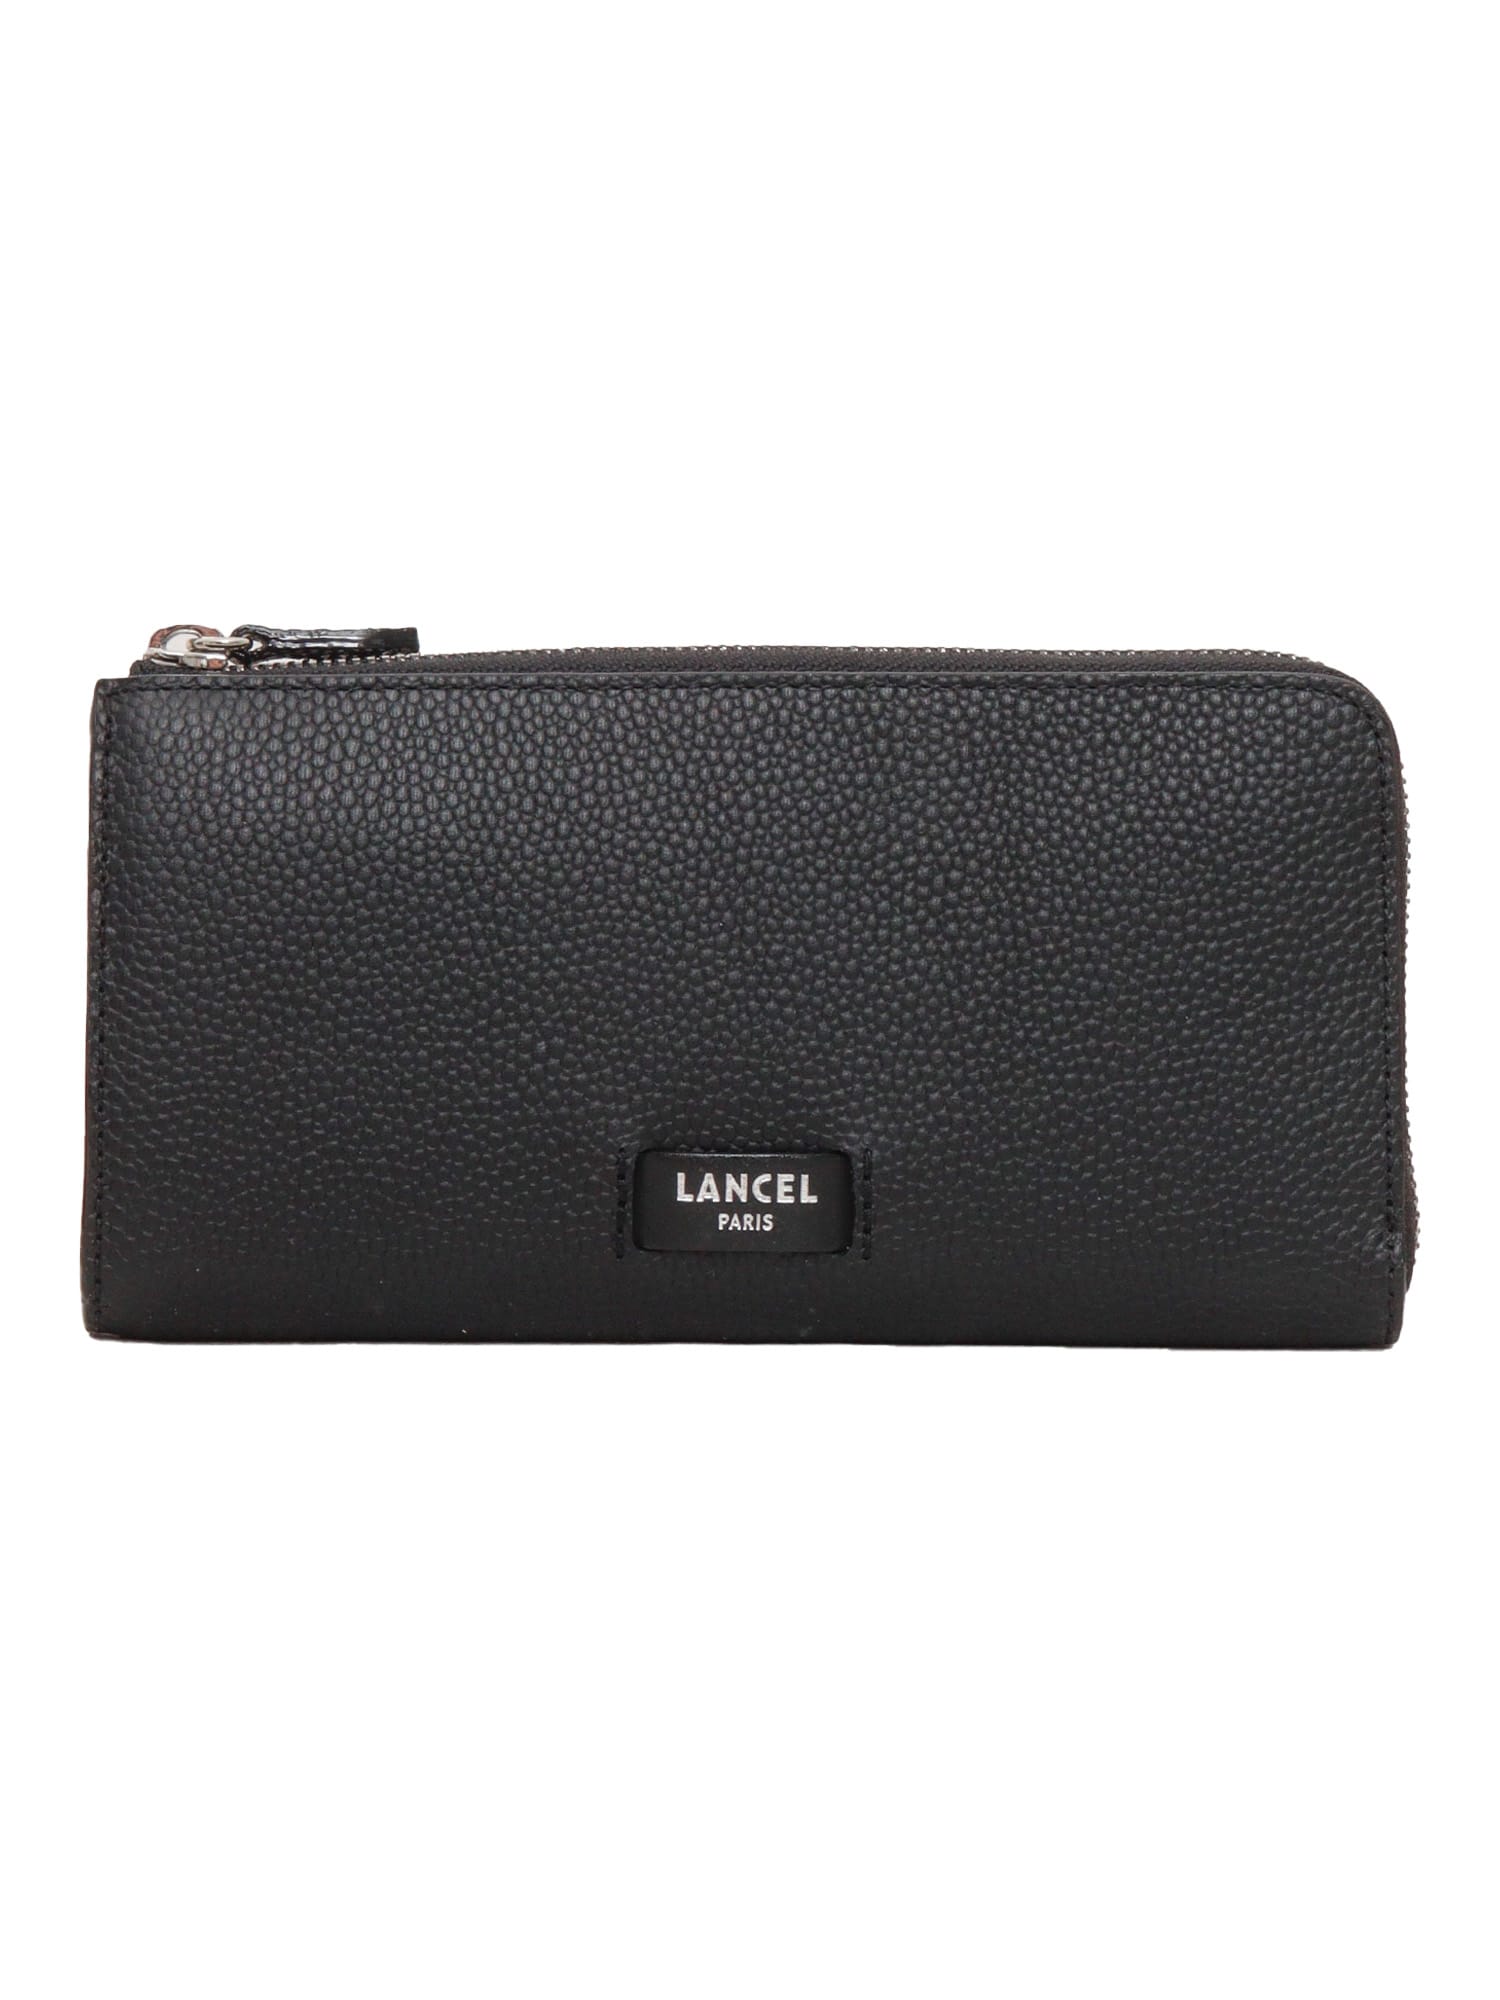 Shop Lancel Black Leather Wallet